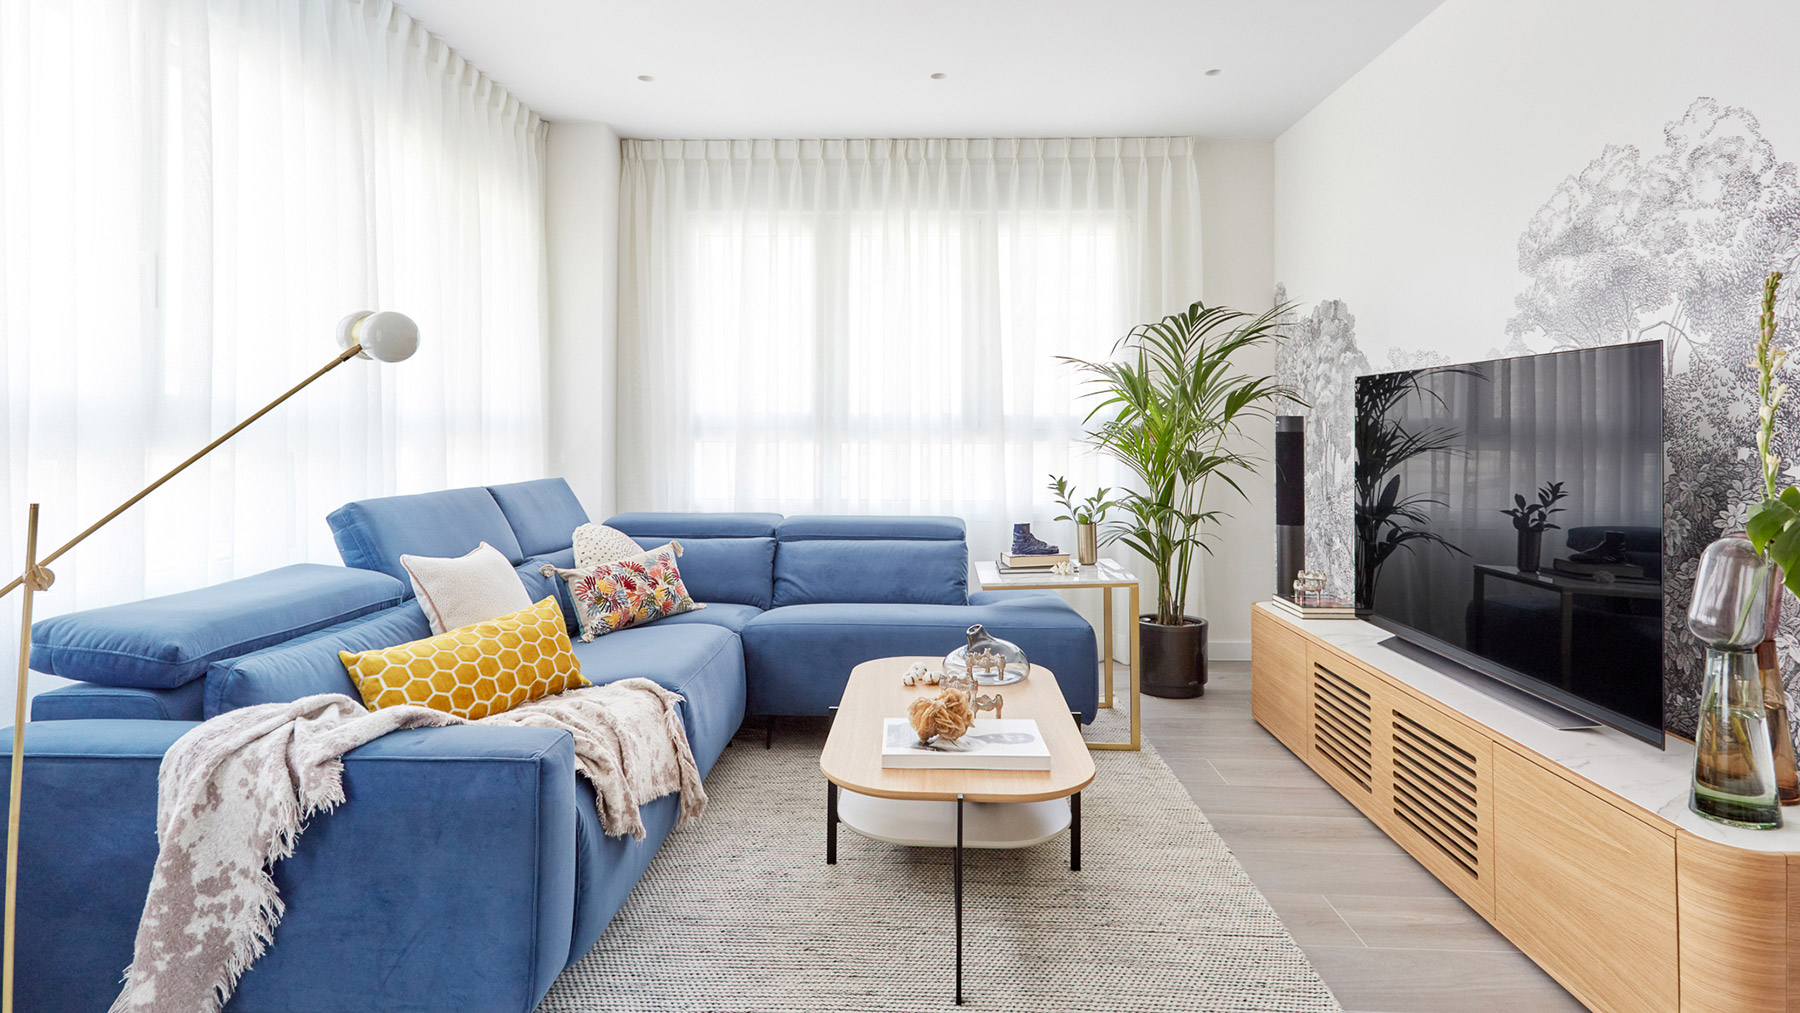 La luz y el color son los grandes protagonistas en este apartamento madrileño diseñado por Deleite Design